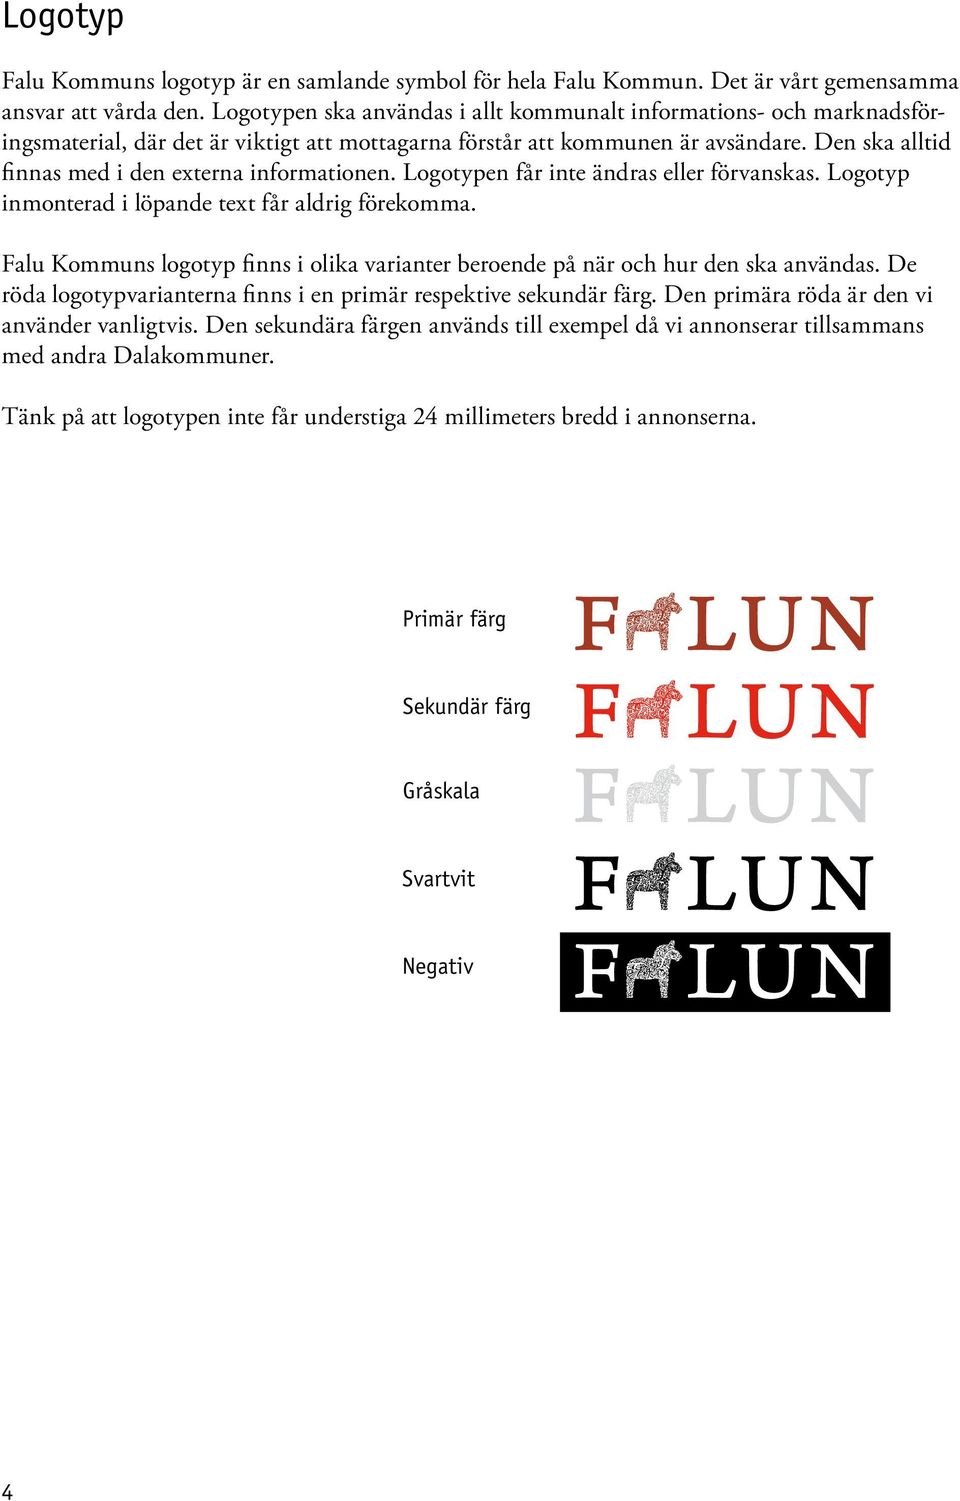 falun.se/ Falu Kommuns grafiska manual för annonser, trycksaker,  kontorsmaterial och övrigt profilmaterial - PDF Gratis nedladdning